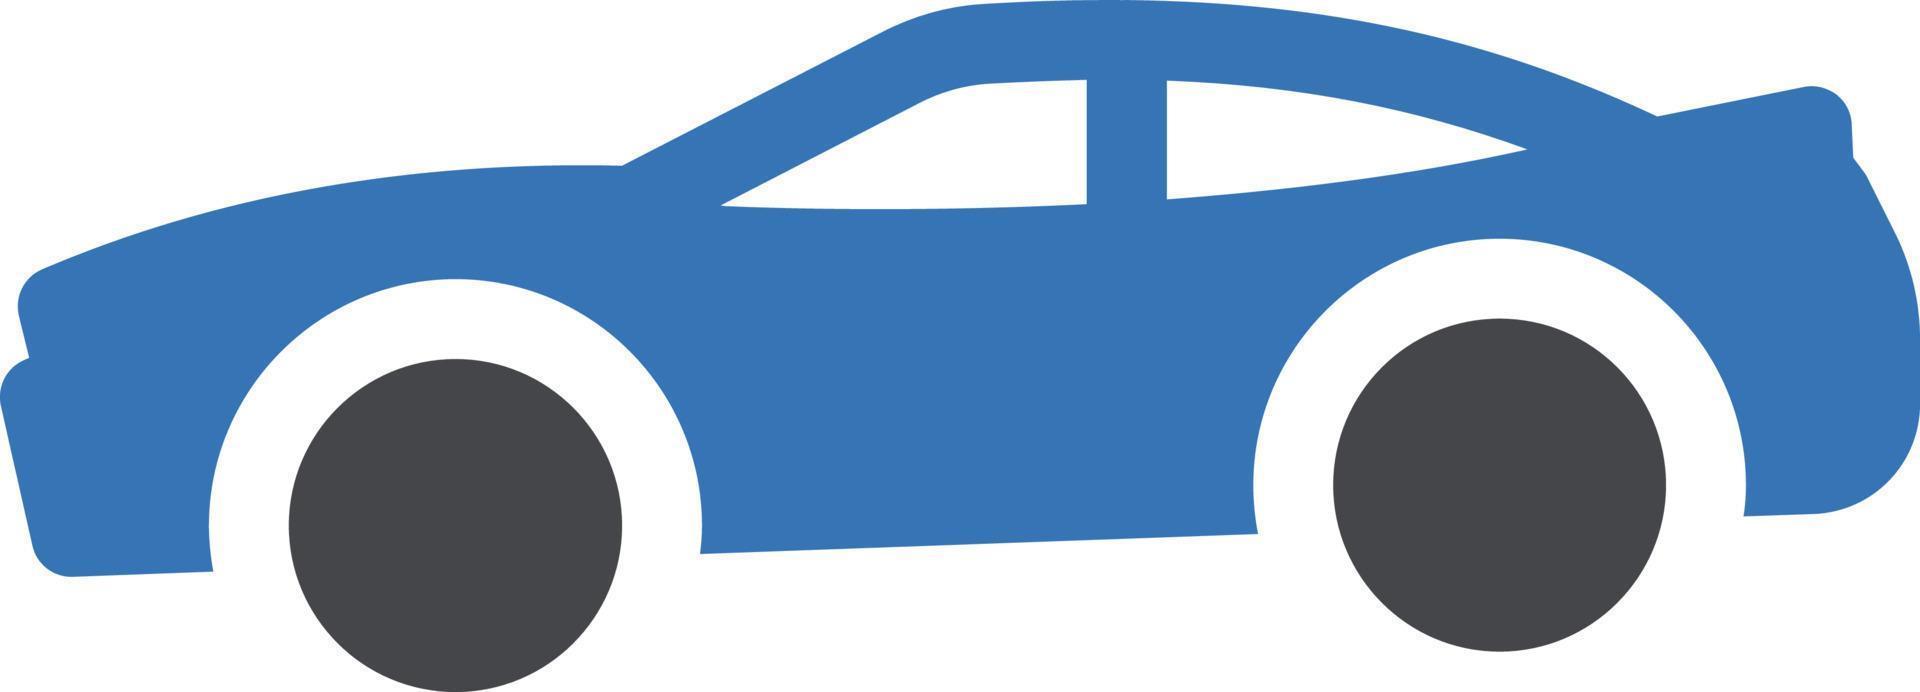 sportwagen-vektorillustration auf einem hintergrund. hochwertige symbole. vektorikonen für konzept und grafikdesign. vektor